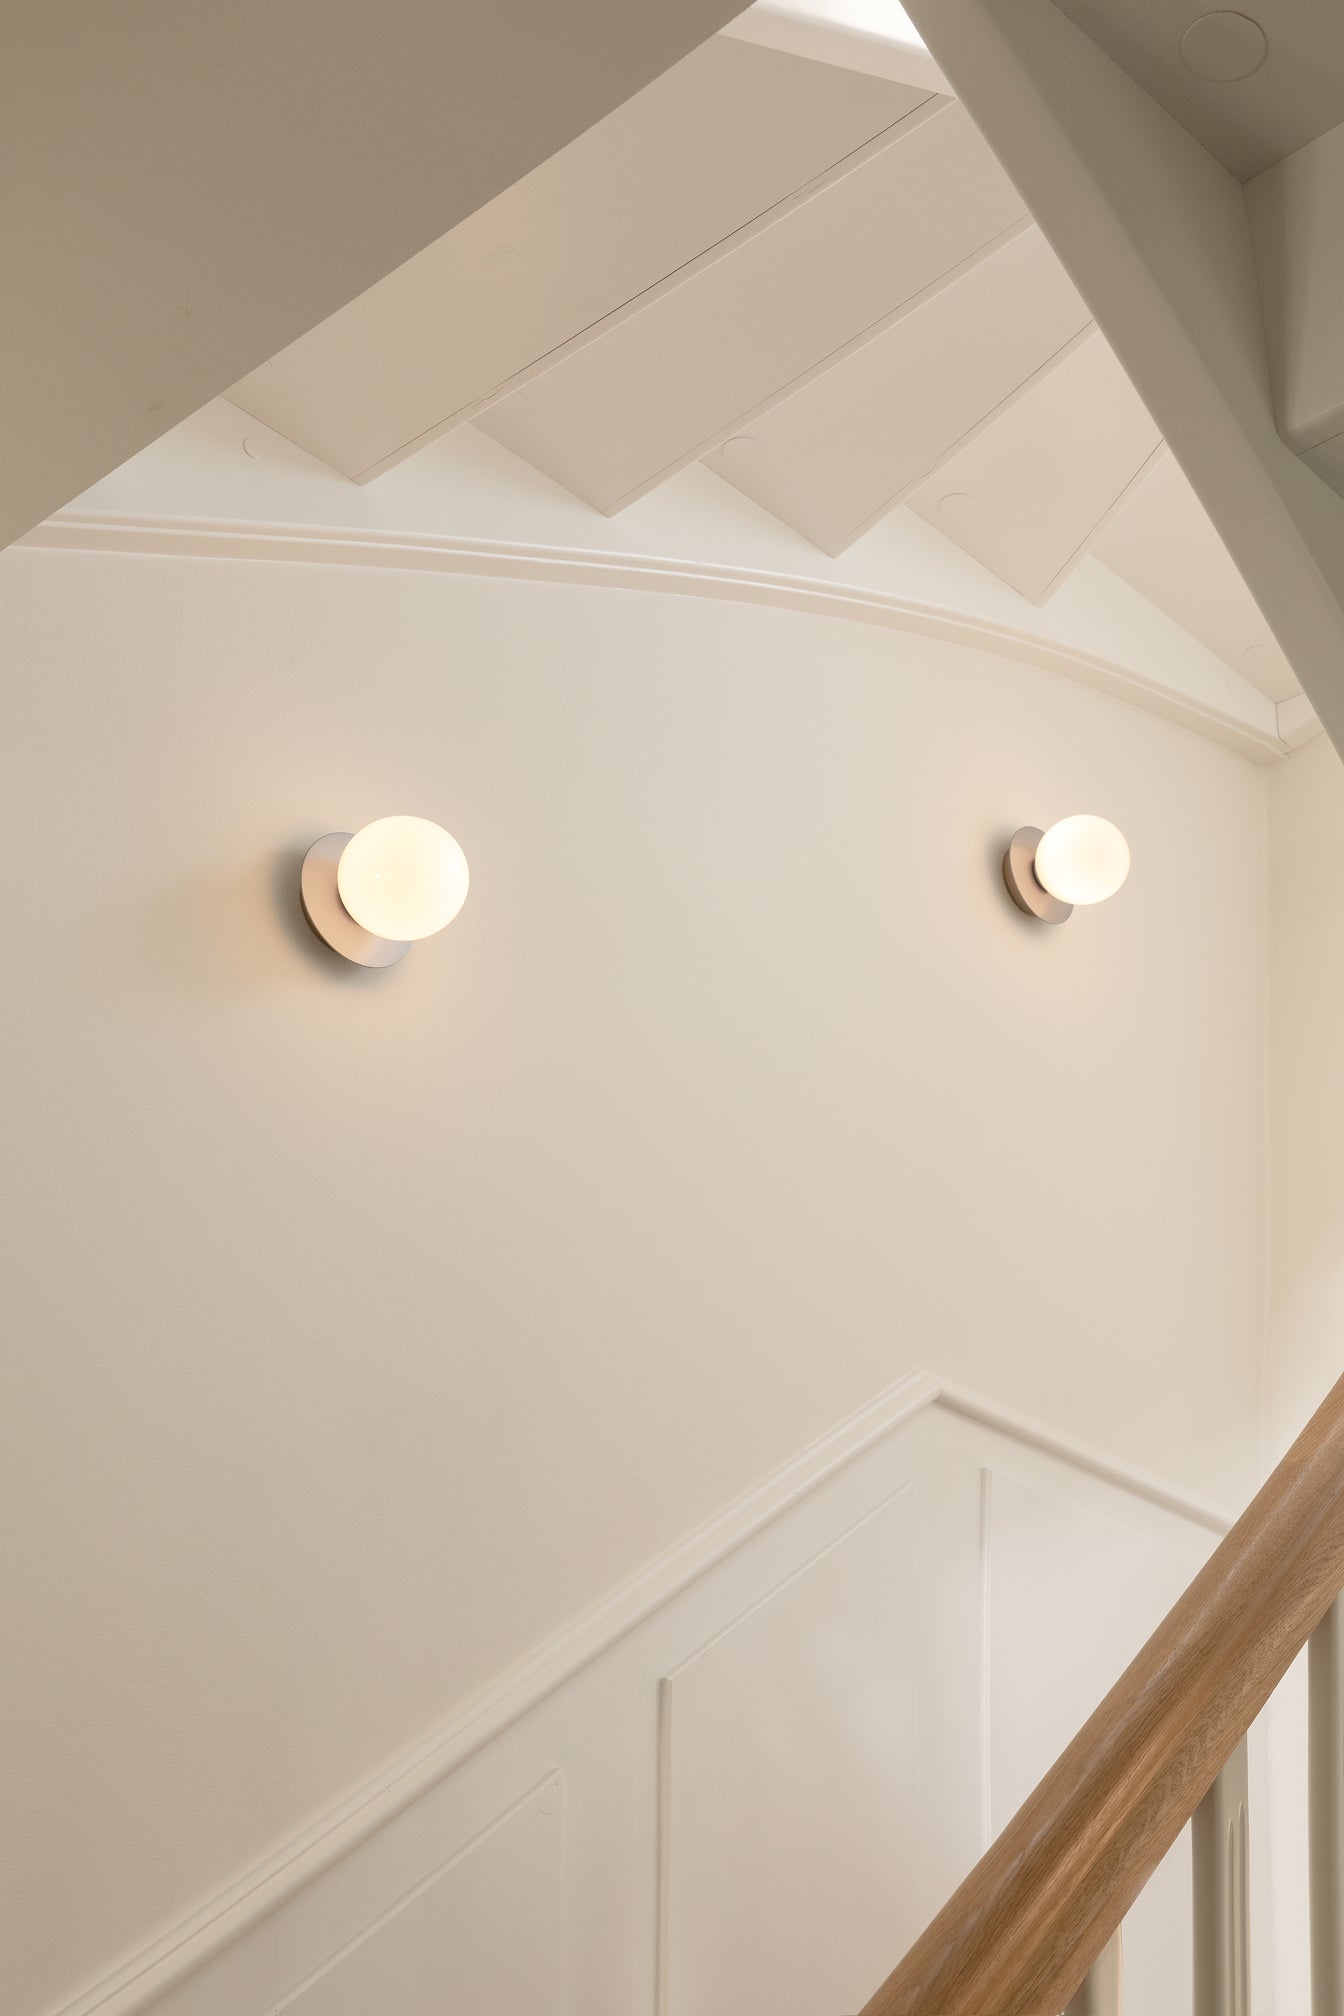 Væglamper med lampeskærme af opalglas og sølvfarvet fatning, langs trappe i hall